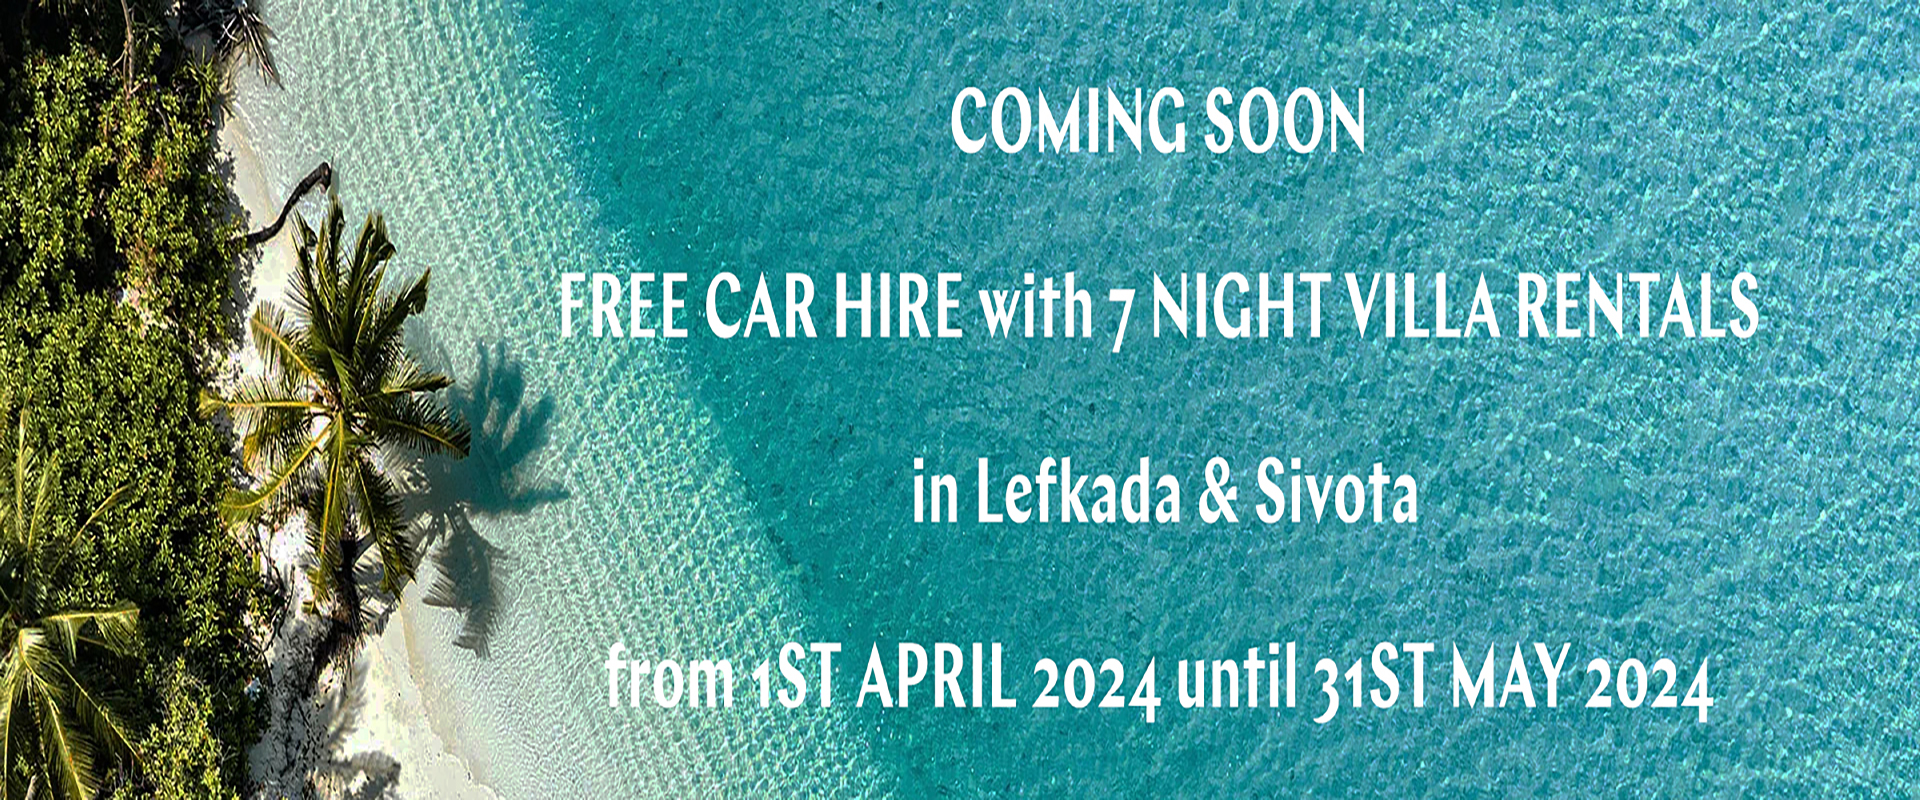 special offer free car hire lefkada sivota villa rentals copy